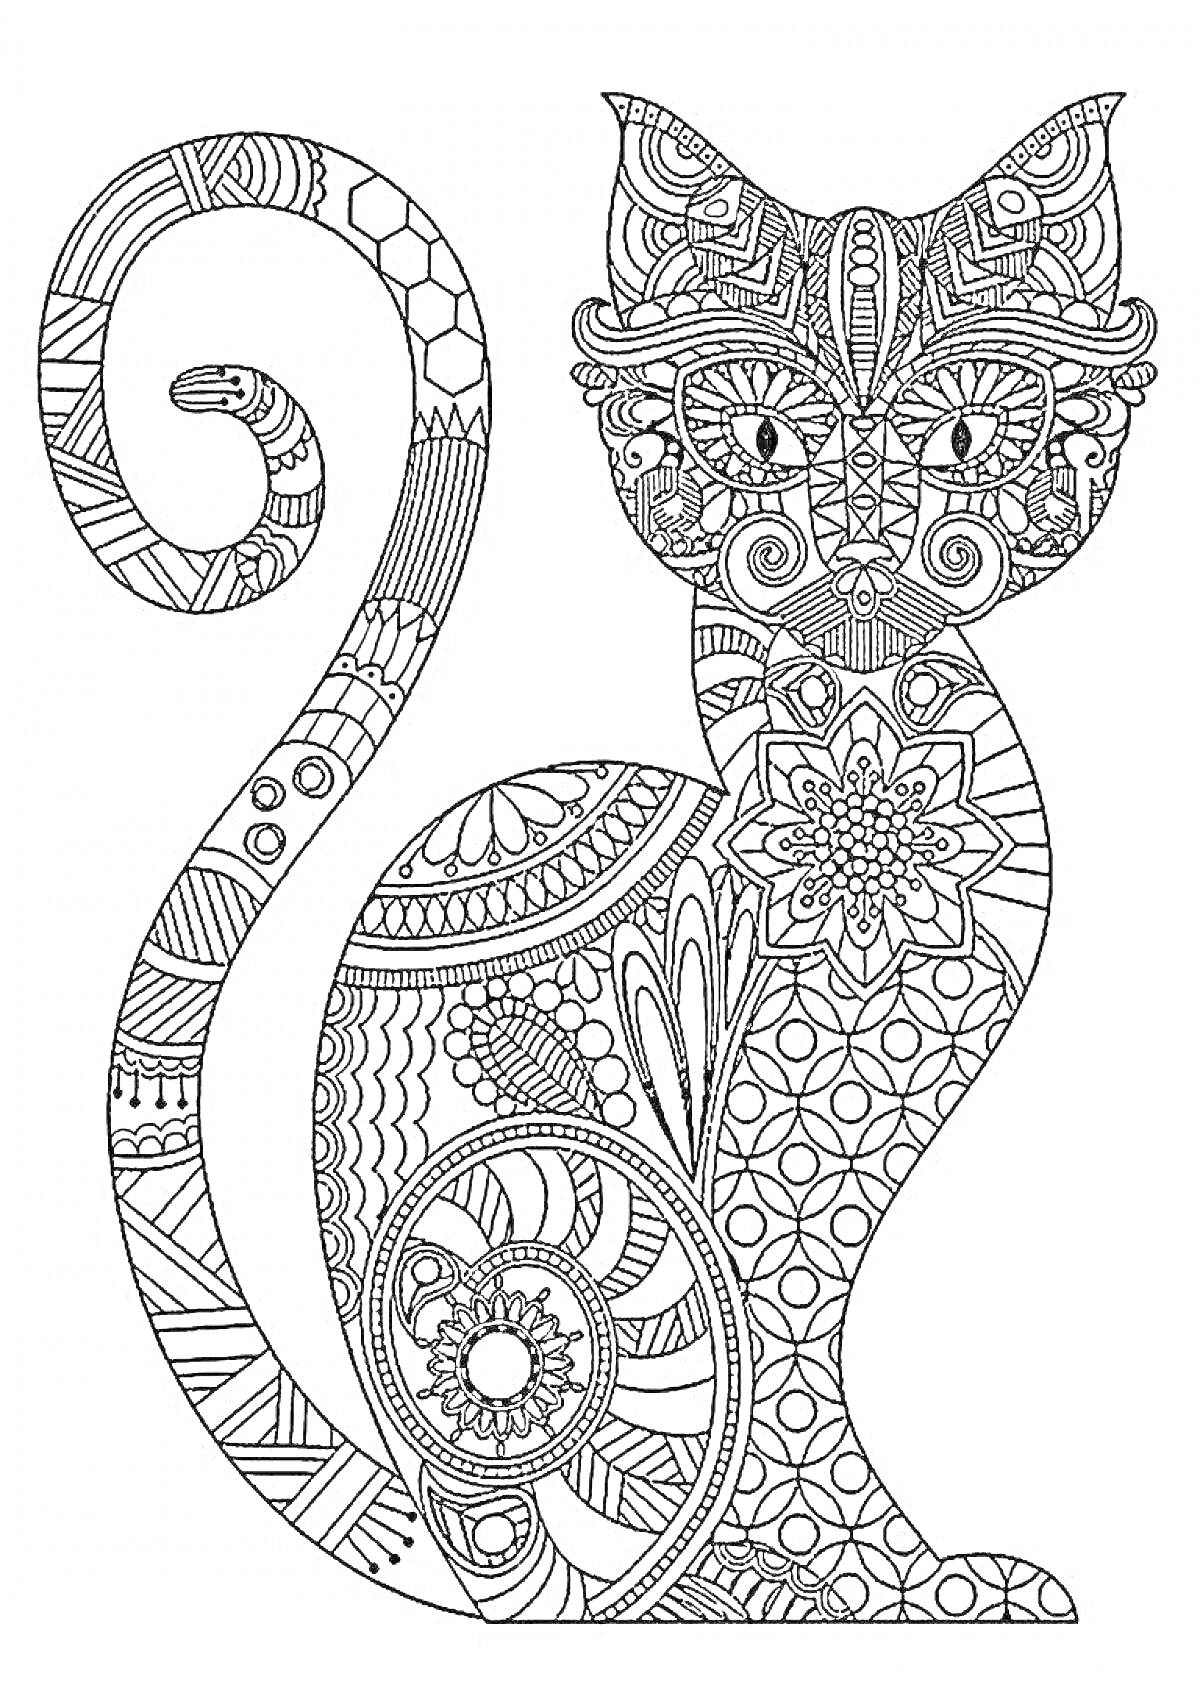 Раскраска Кошка с мандалой и сложным орнаментом на теле и хвосте